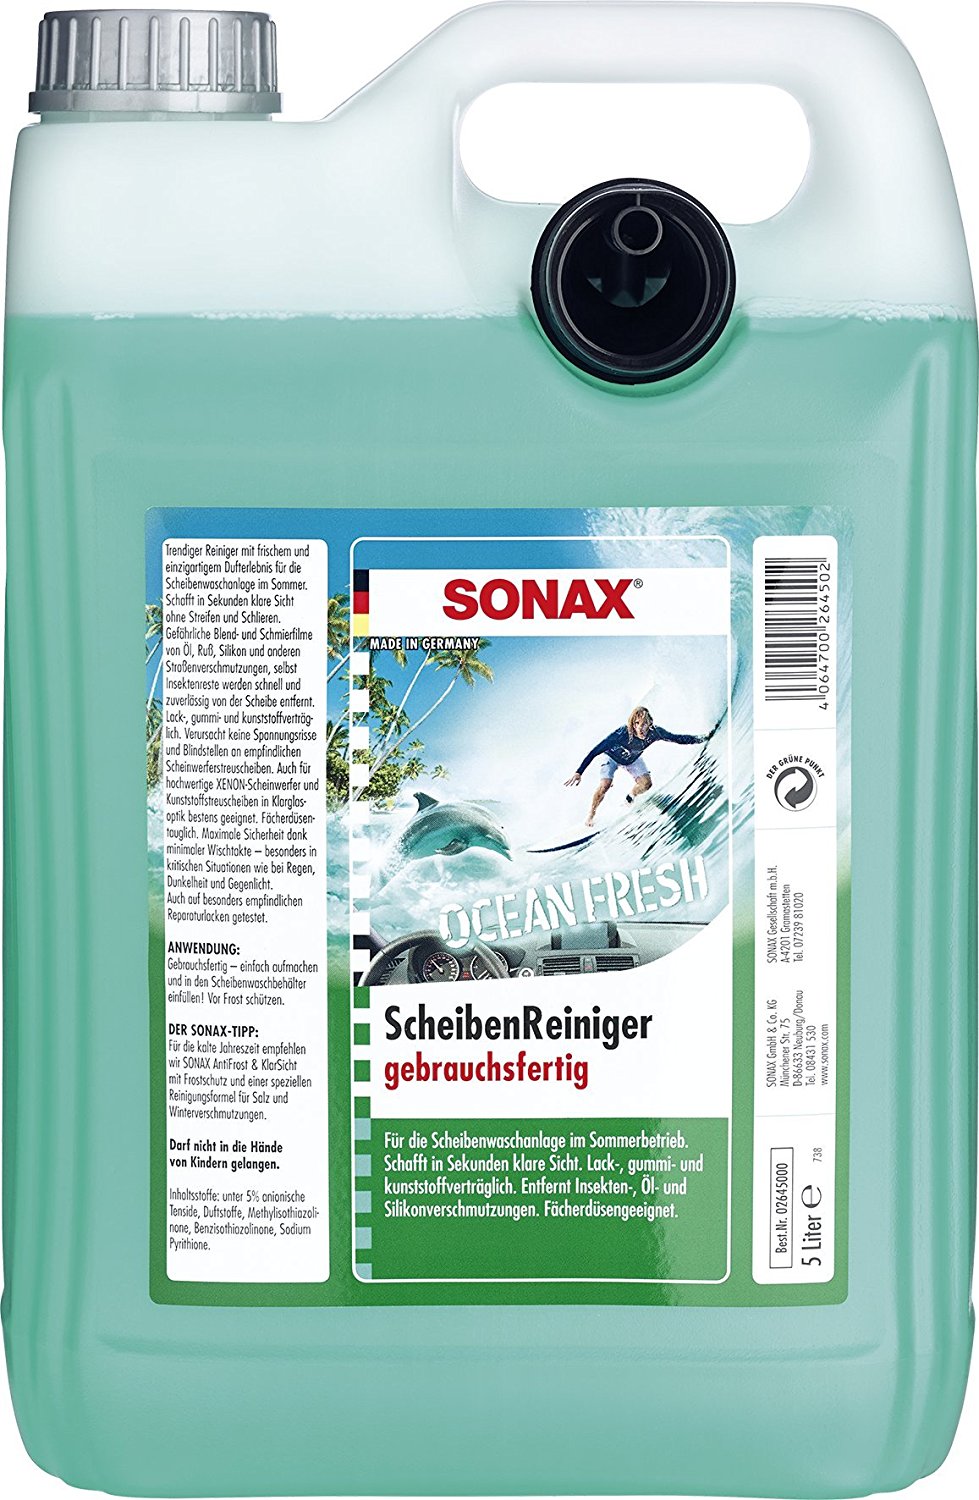 Sonax ScheibenReiniger gebrauchsfertig Ocean Fresh 5 Liter